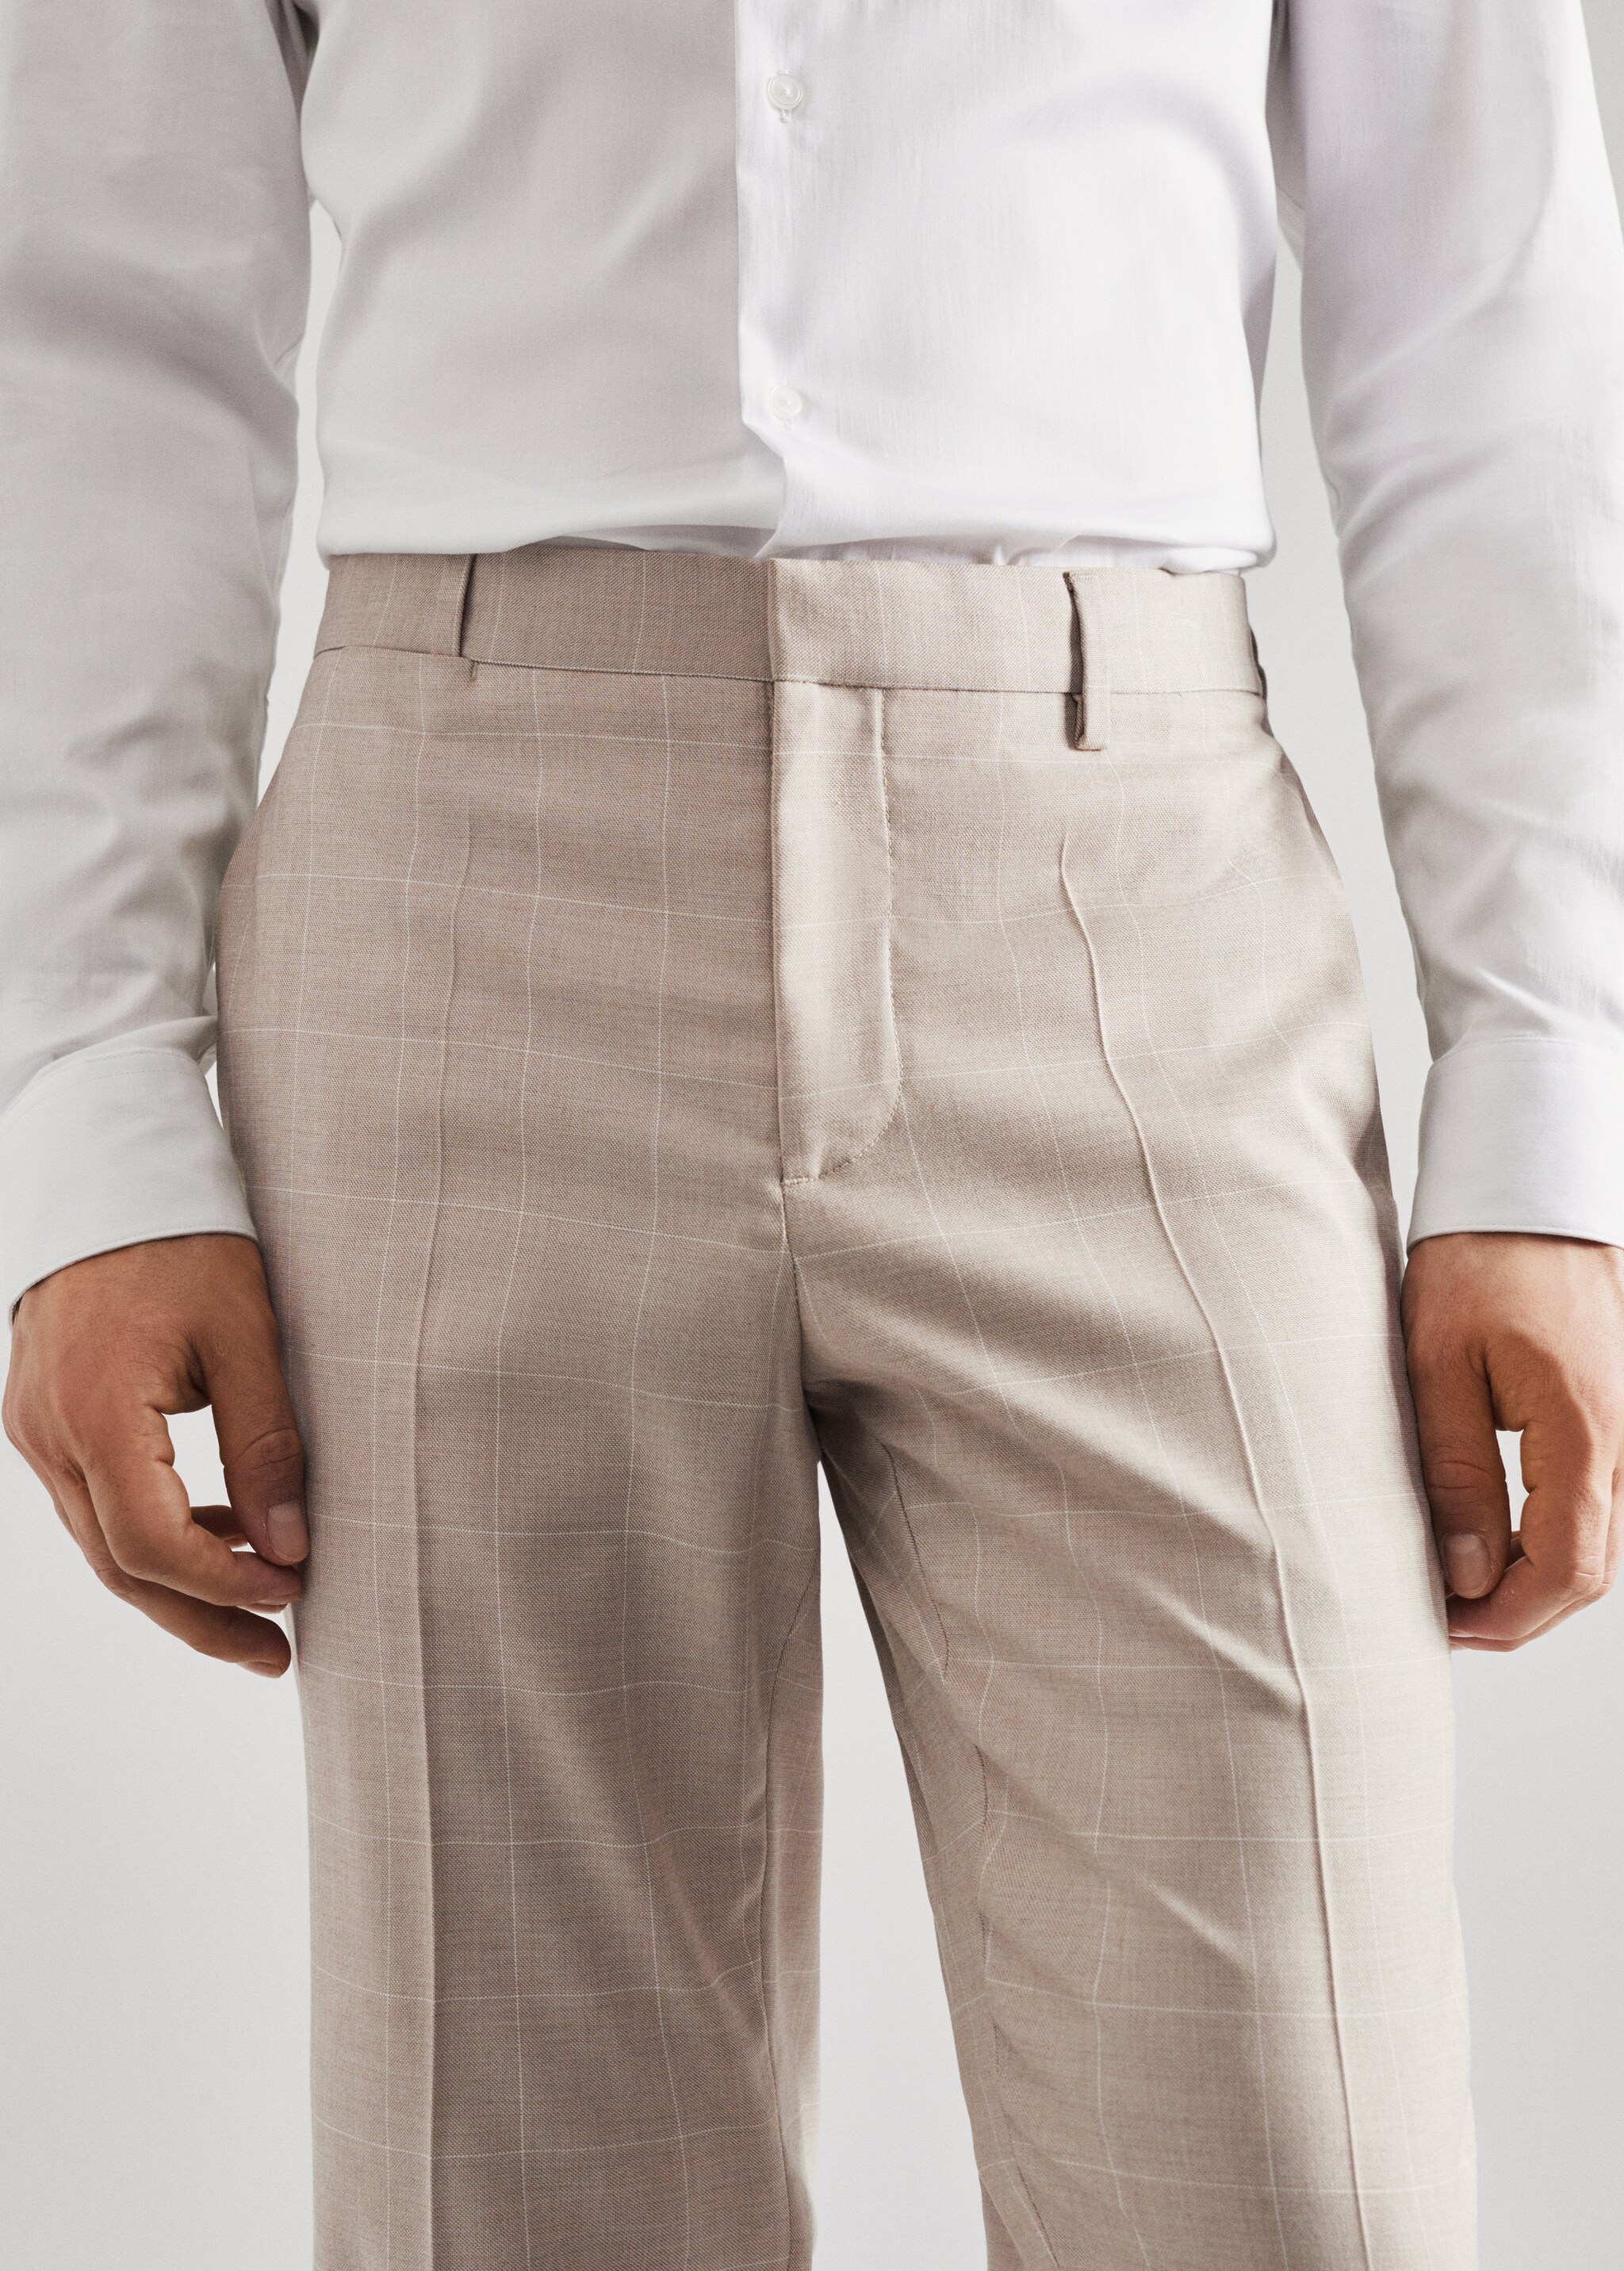 Spodnie garniturowe super slim fit w kratę - Szczegóły artykułu 1